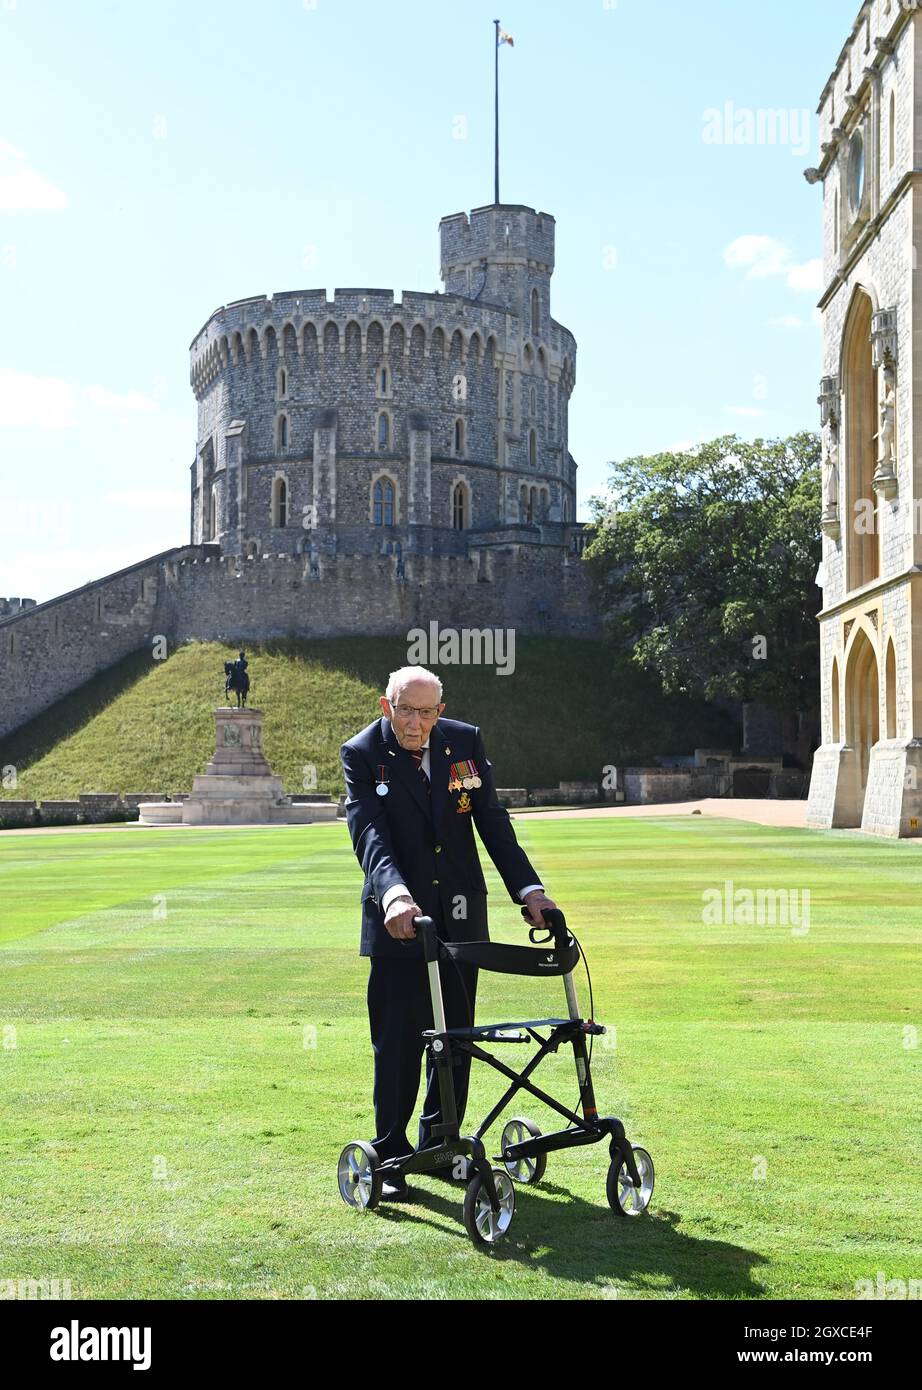 La reine Elizabeth II (à l'aide de l'épée qui appartenait à son père, le roi George VI) confère l'honneur de chevalier au capitaine Sir Thomas Moore, âgé de 100 ans, avant de lui présenter l'insigne du baccalauréat lors d'une cérémonie d'investiture au château de Windsor, le 17 juillet 2020.Le capitaine Tom Moore a amassé plus de 32 millions de livres sterling pour le NHS pendant la pandémie du coronavirus. Banque D'Images